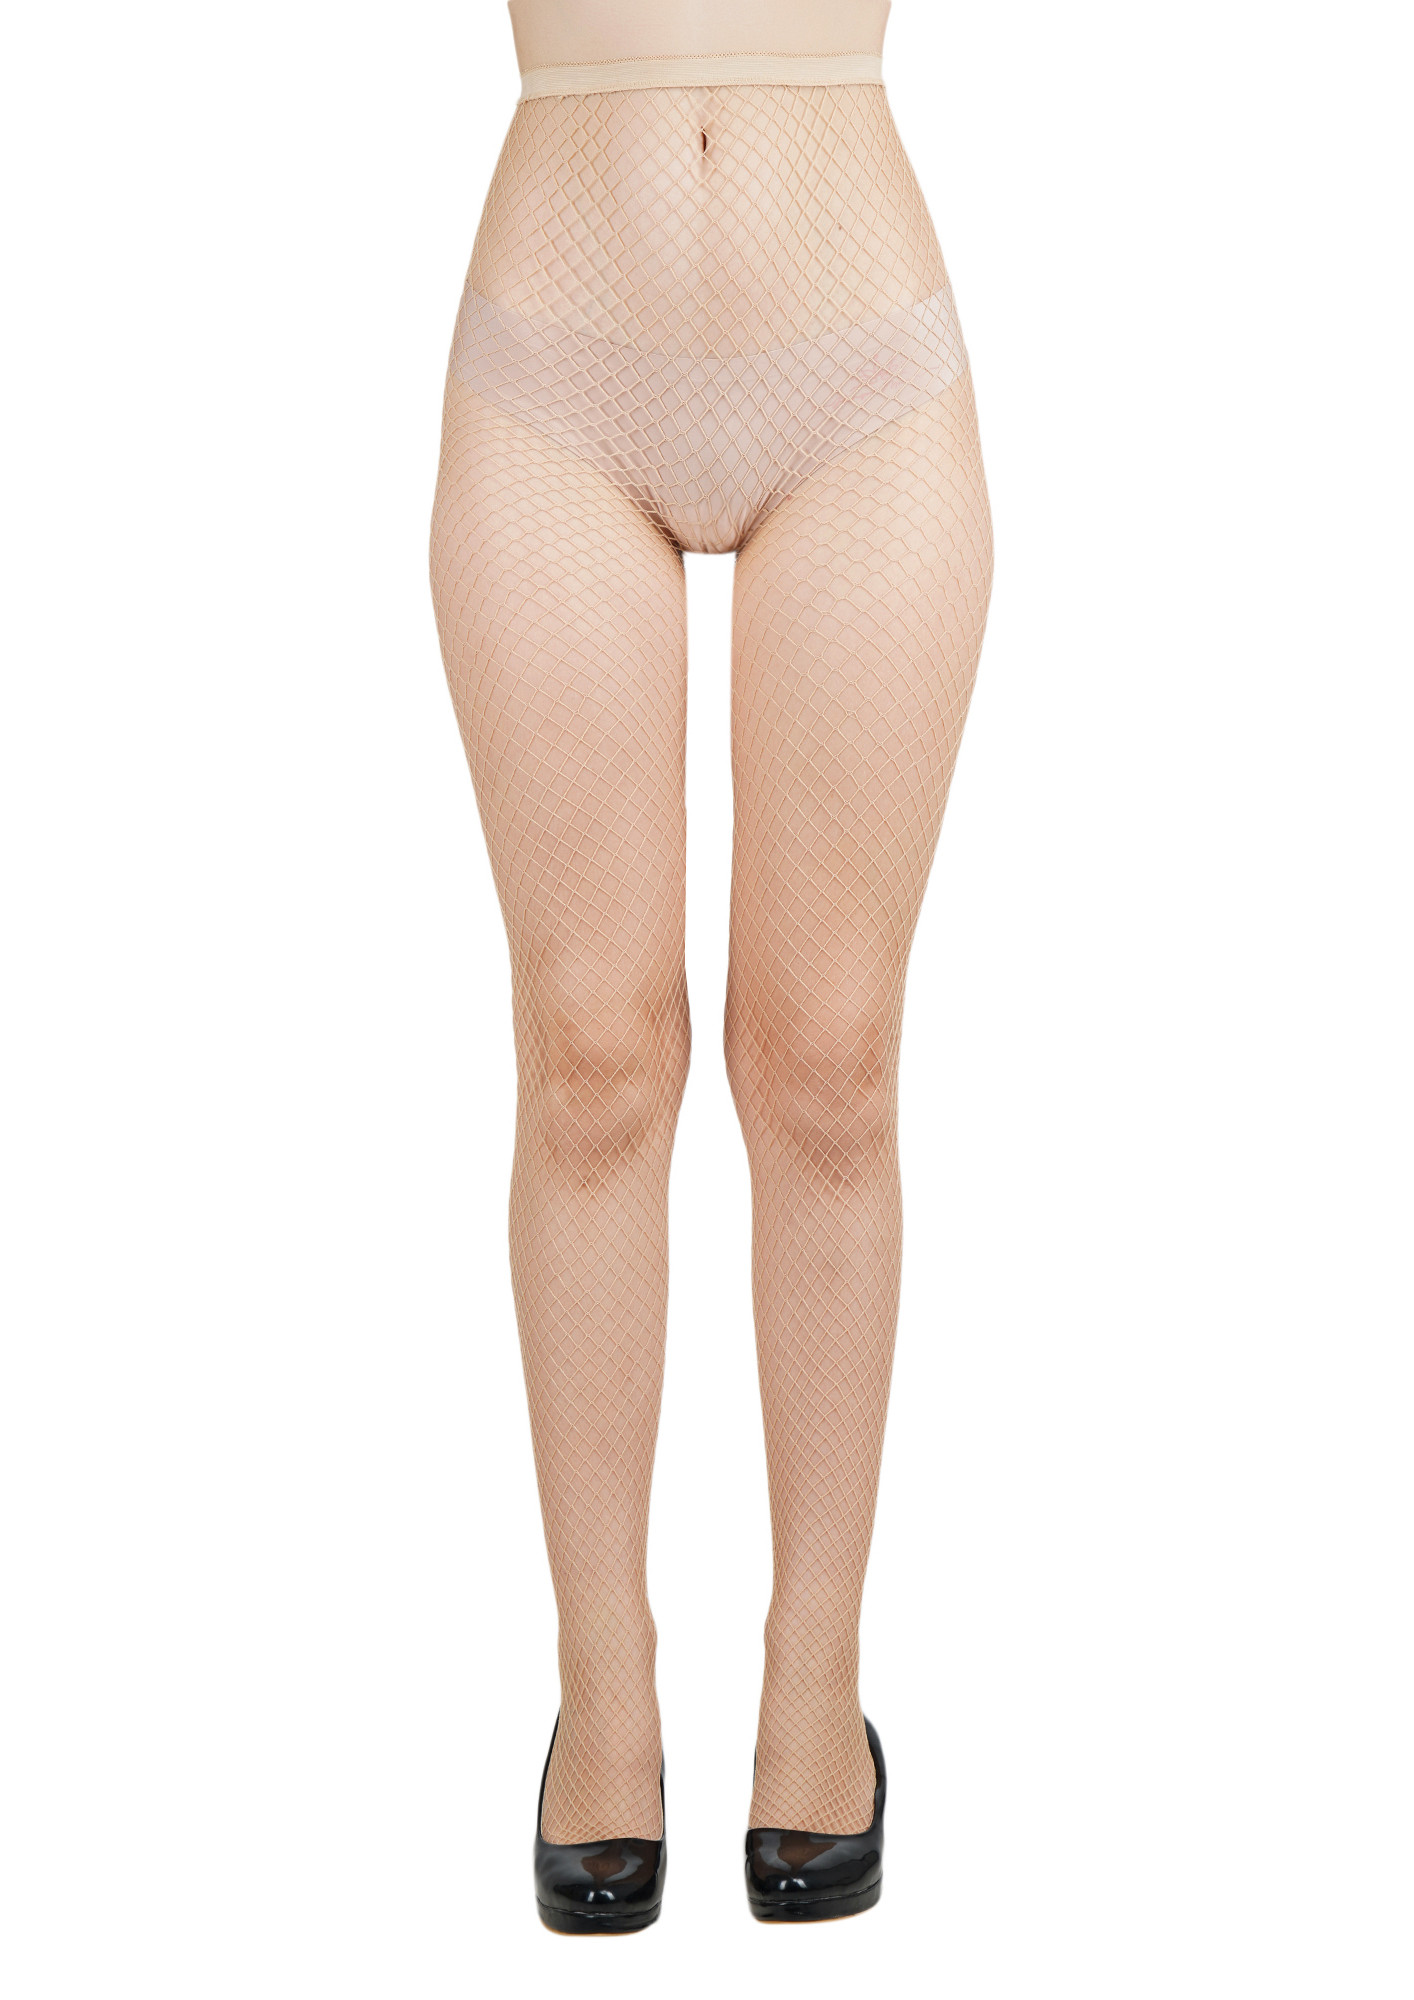 Buy NEXT2SKIN Women Fishnet Pattern Mesh Pantyhose Stockings (Skin, Medium  Net) for Women Online in India